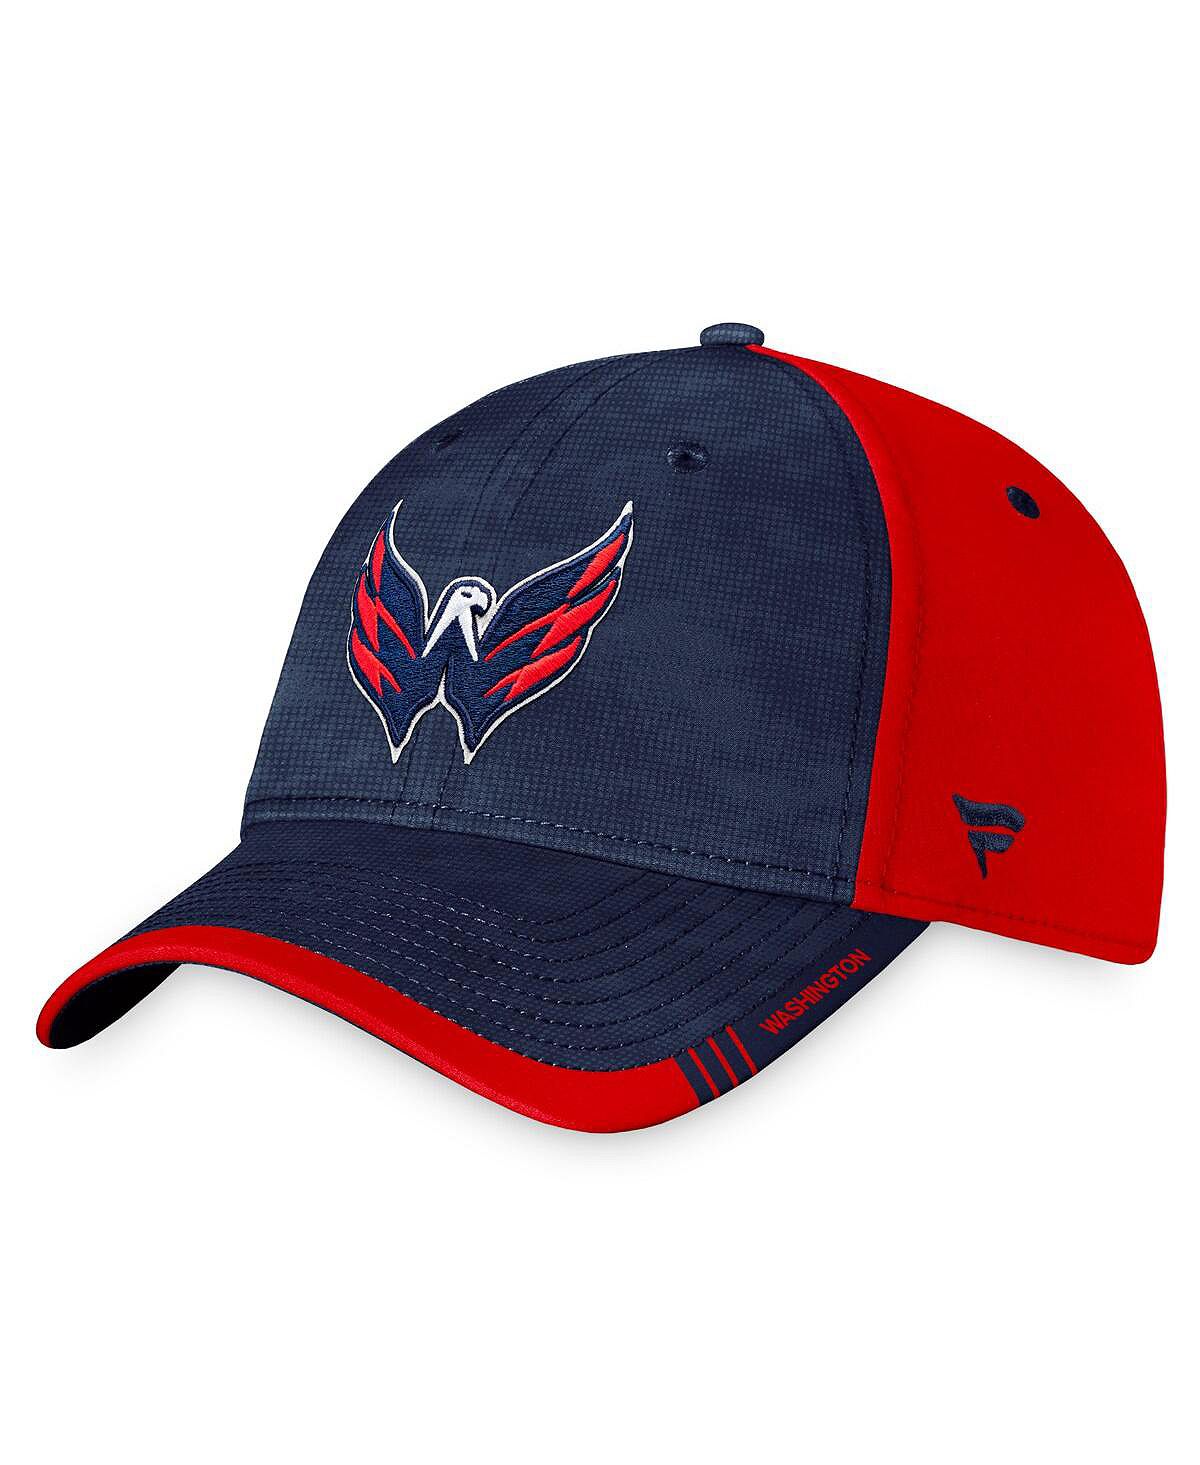 Мужская фирменная темно-красная шляпа Washington Capitals Authentic Pro Rink Camo Flex. Fanatics